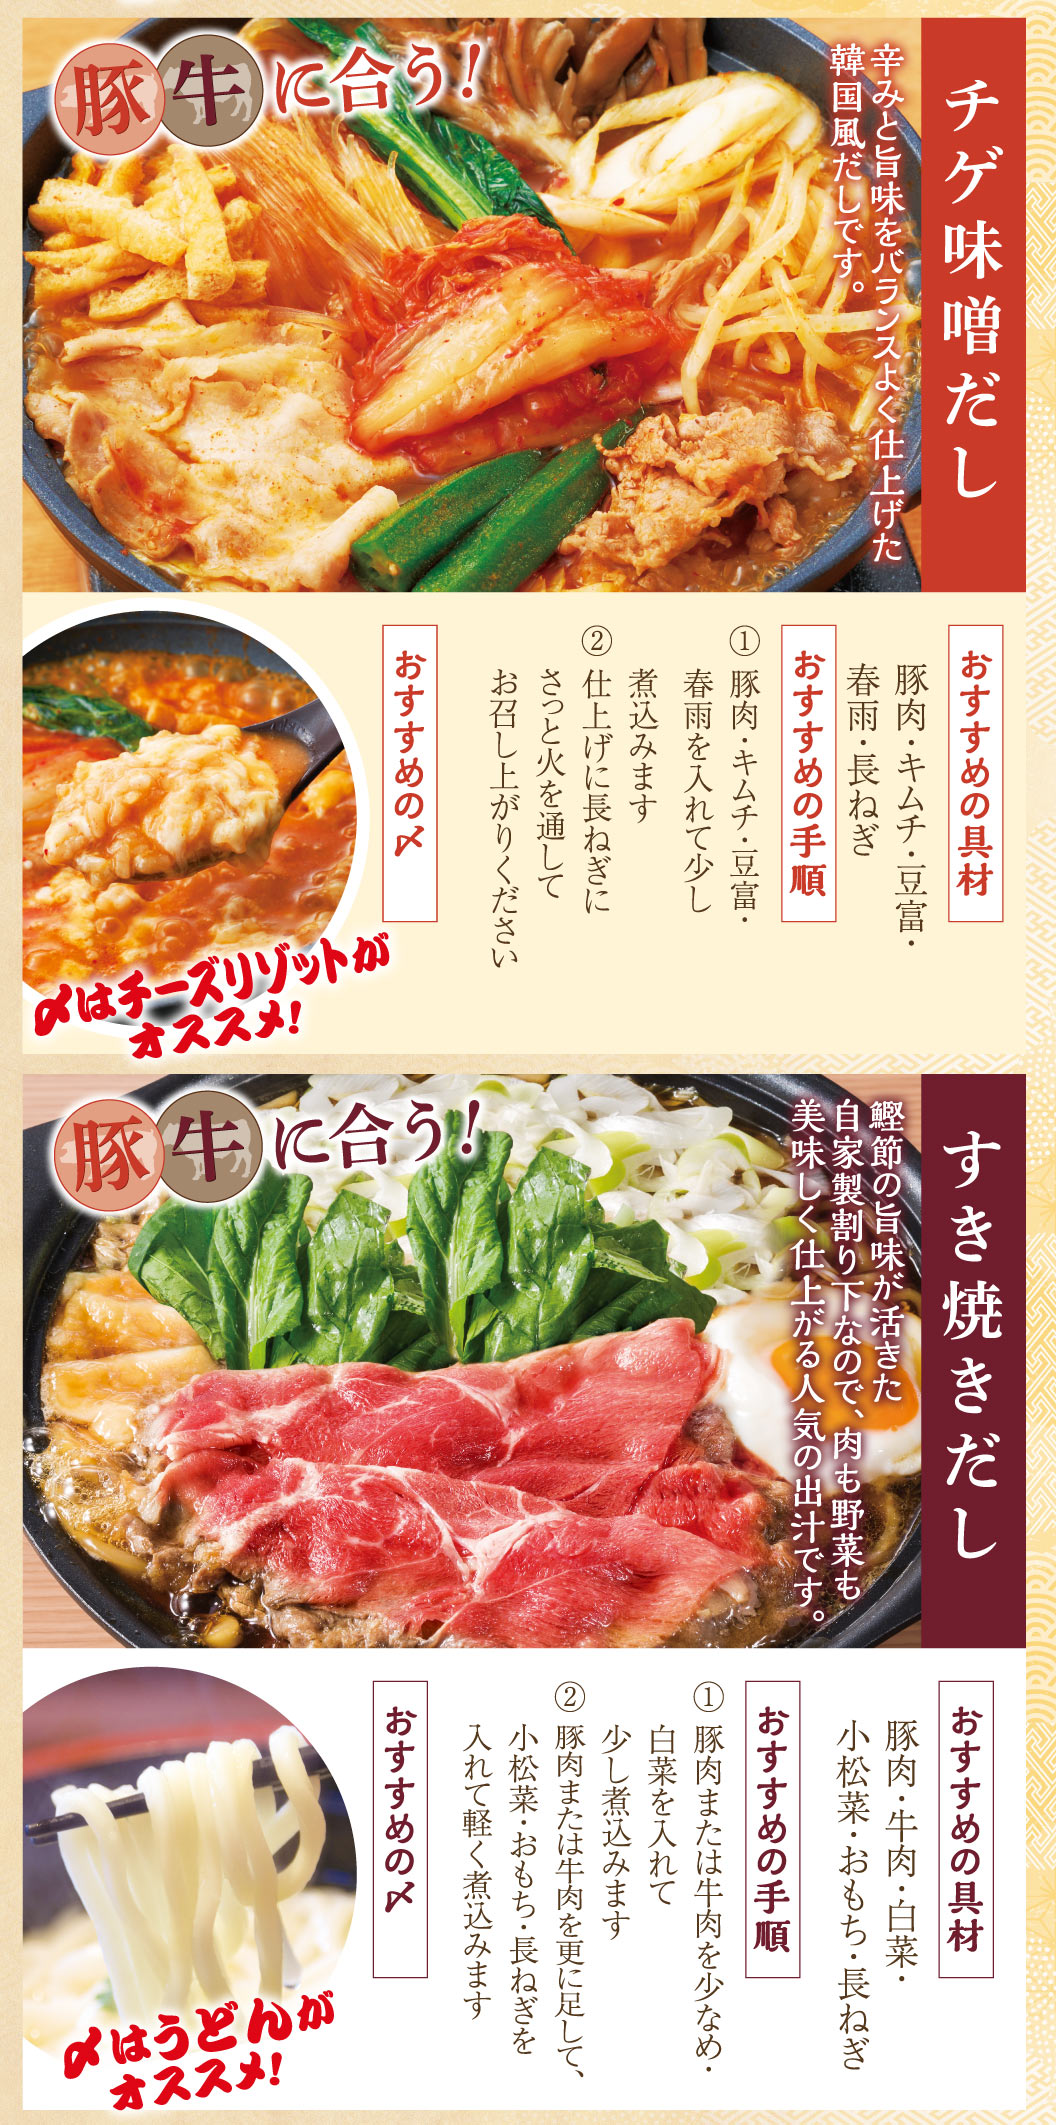 Chige miso soup stock, Sukiyaki soup stock